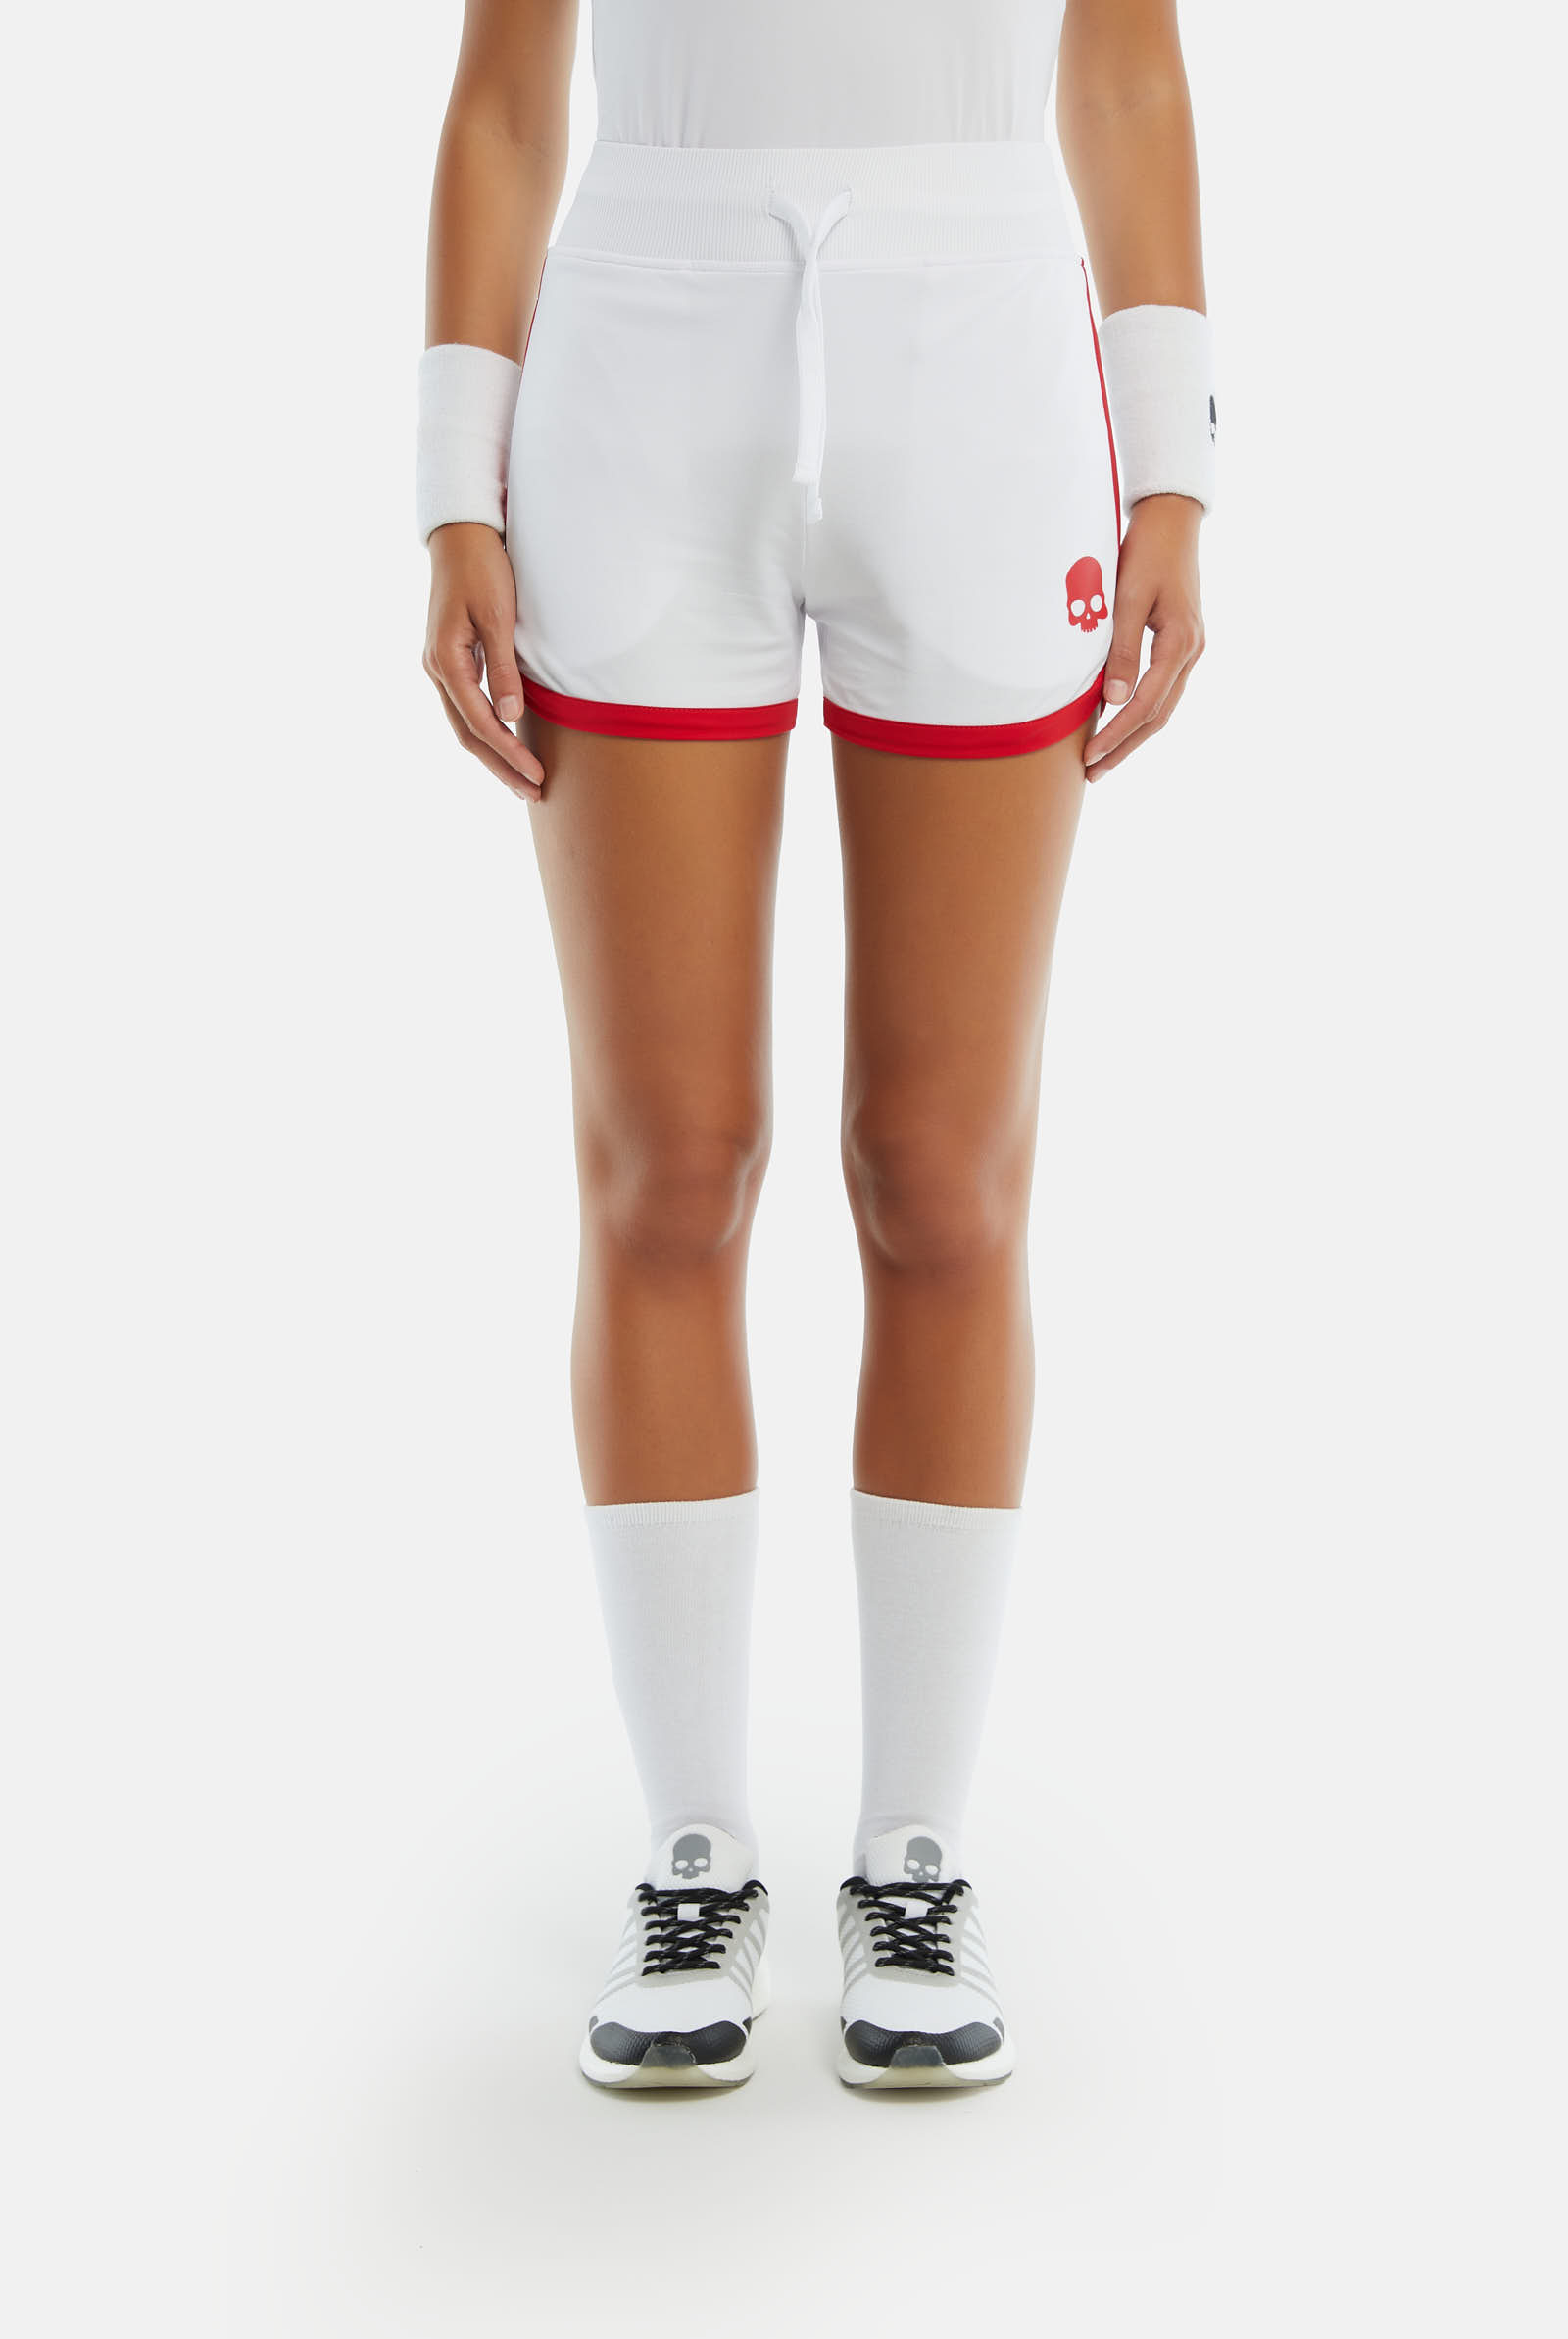 TECH SHORTS - WHITE,RED - Hydrogen - Luxury Sportwear